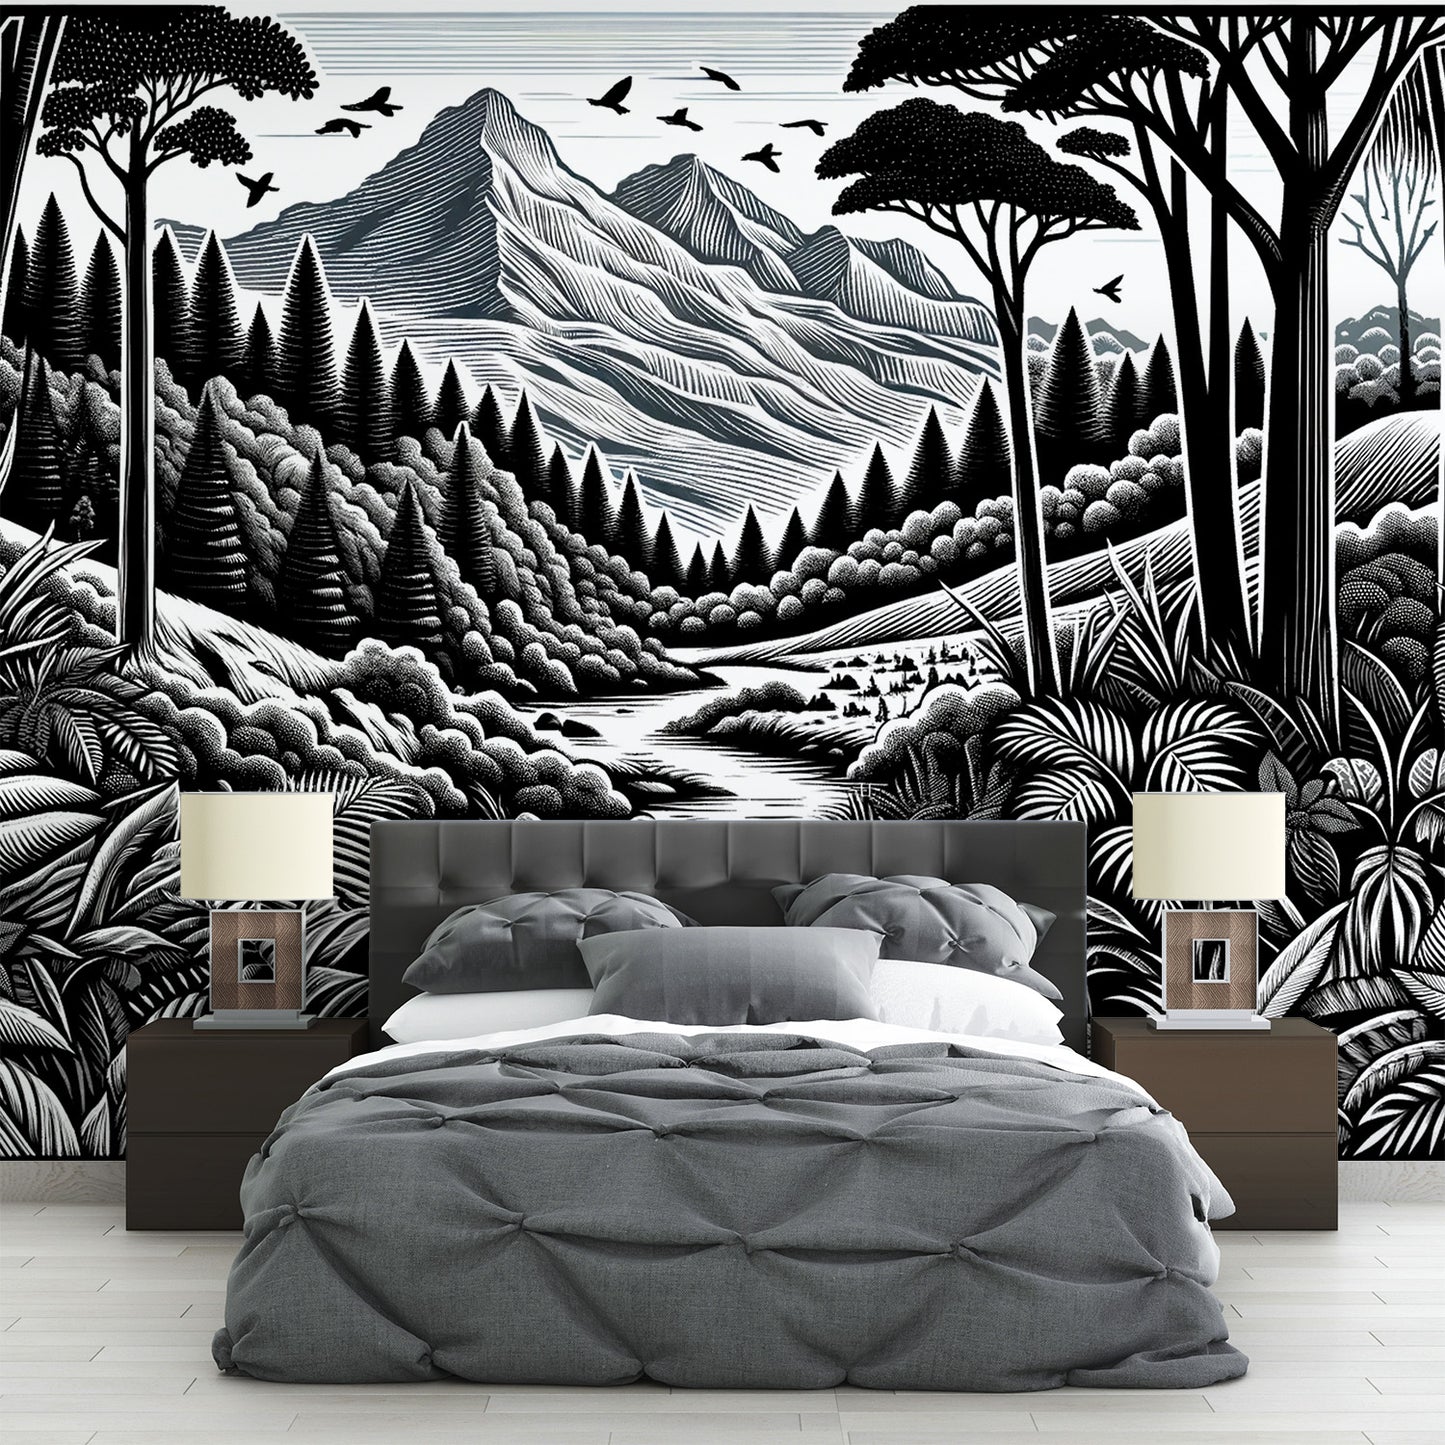 Papier peint jungle noir et blanc | Végétation et relief montagneux